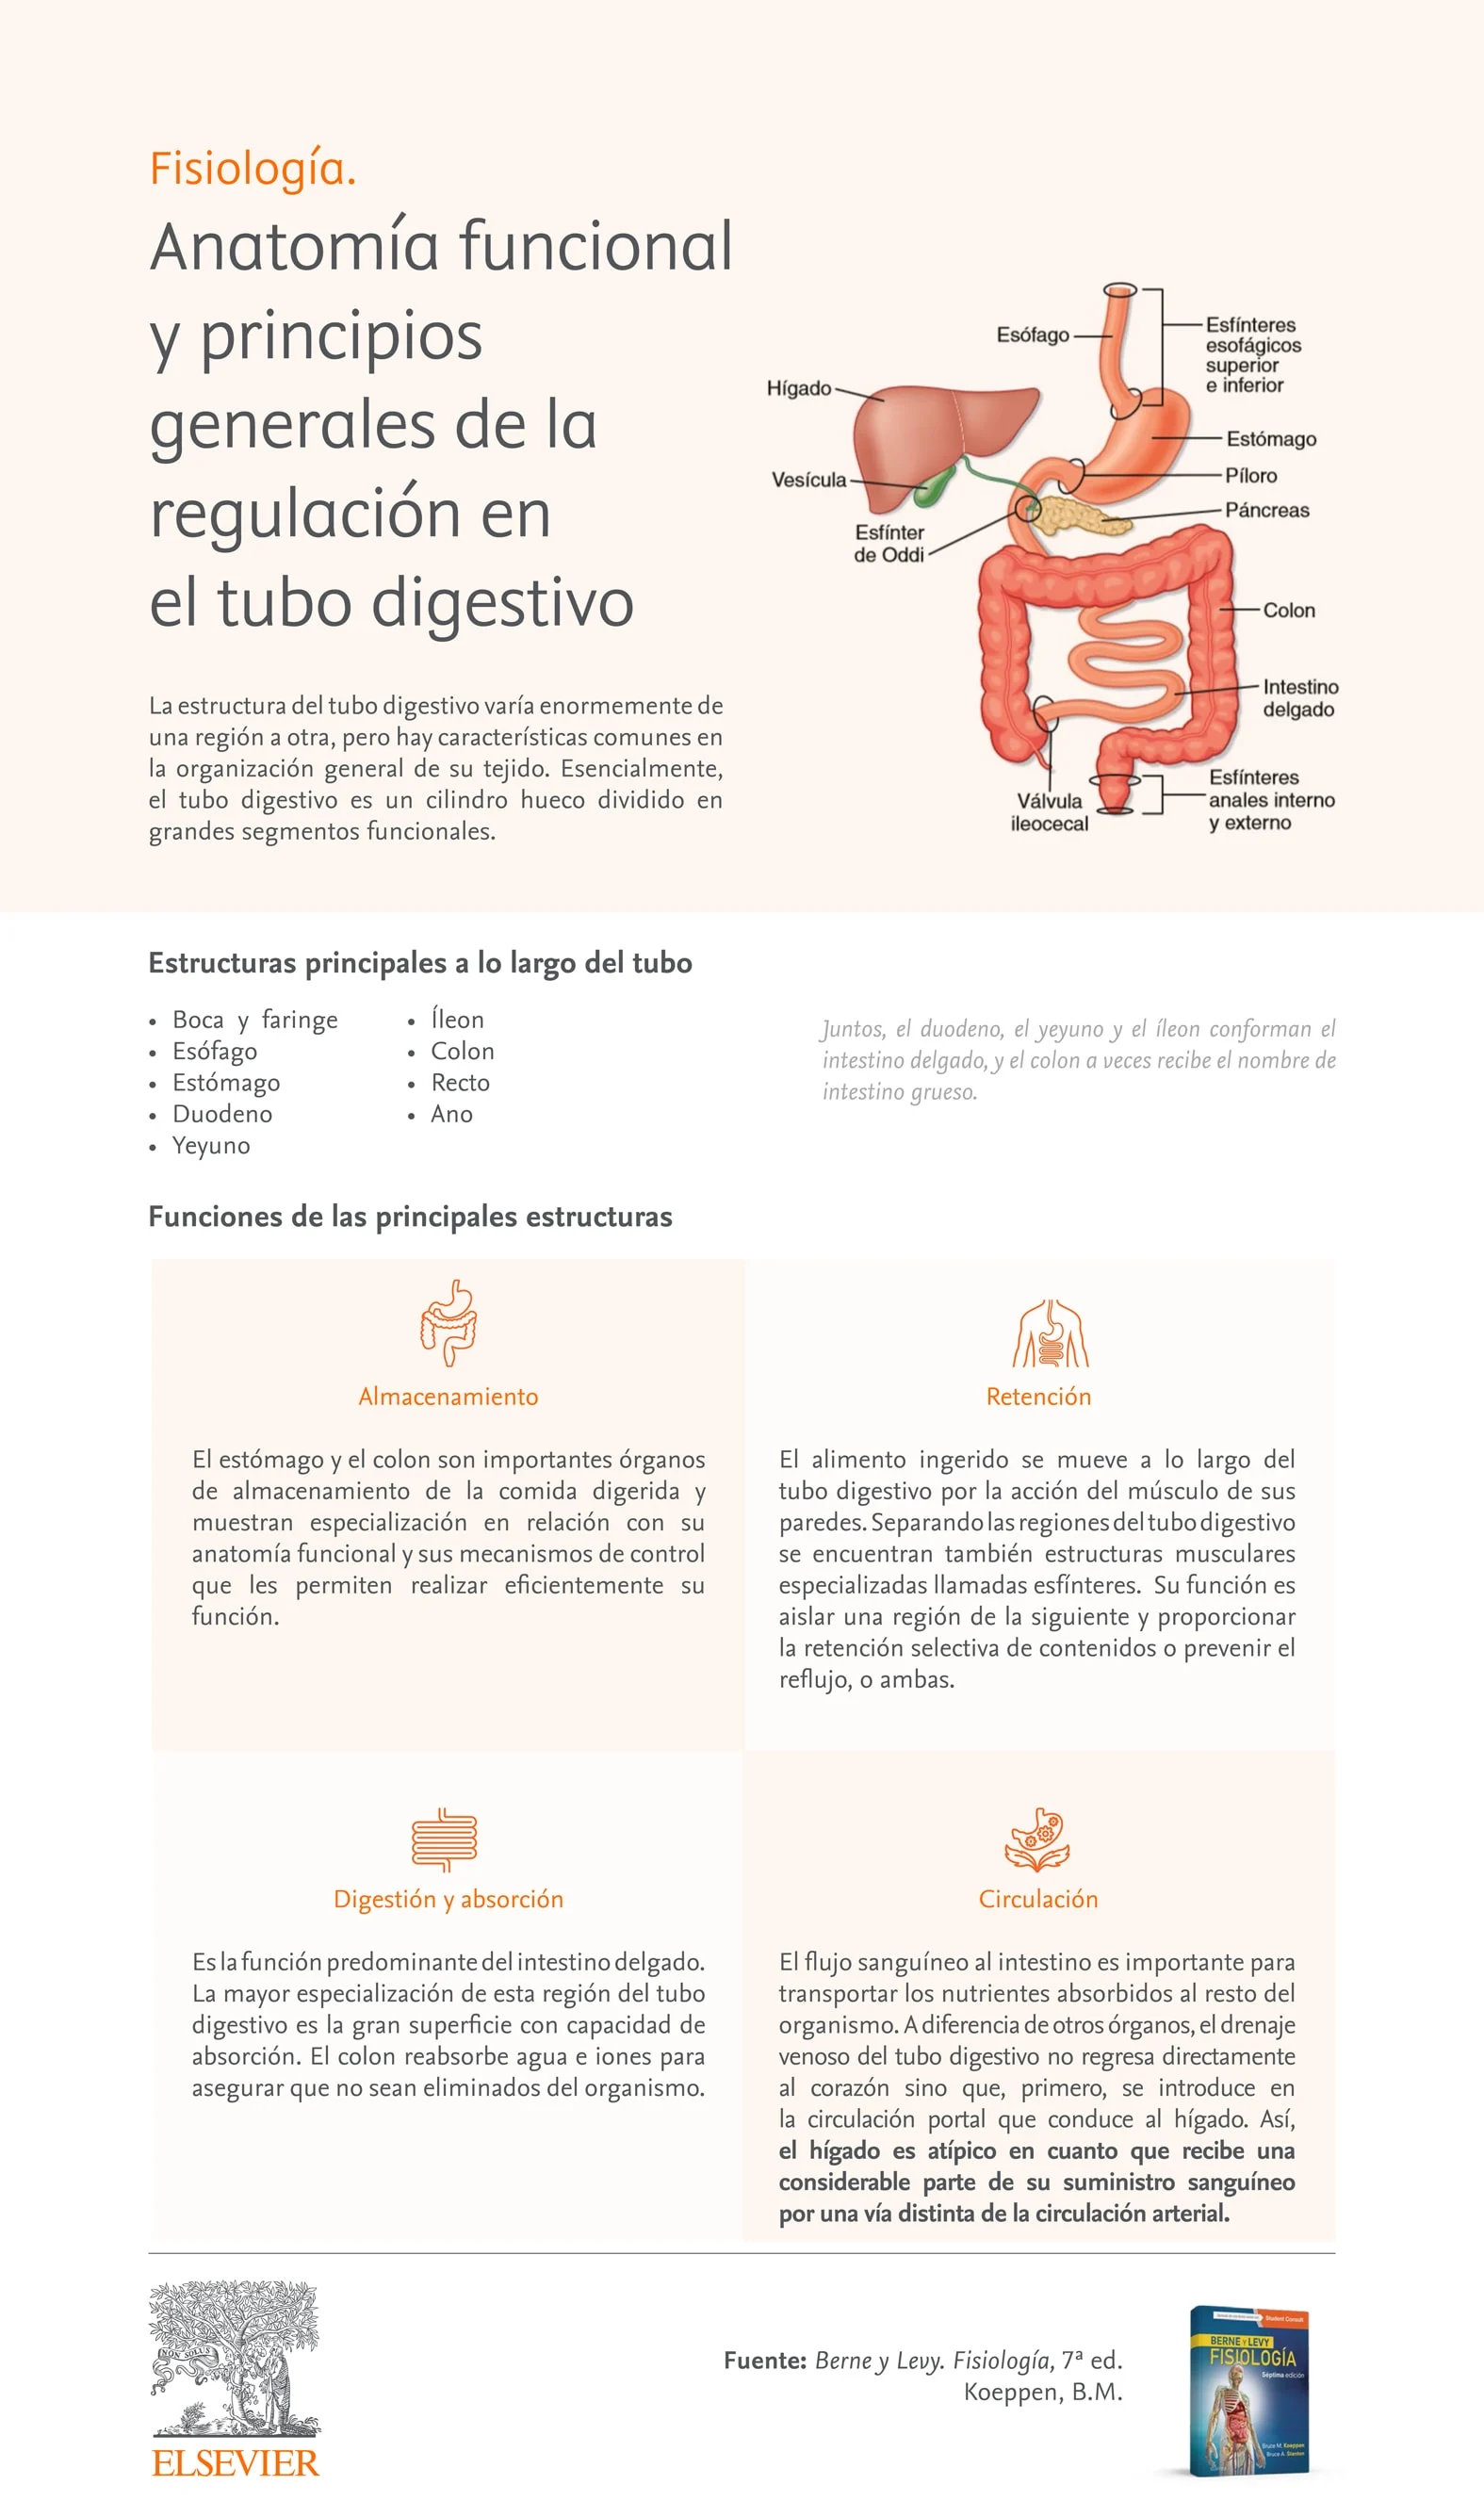 Infografia Berne and Levyfisiologia anatomia funcional